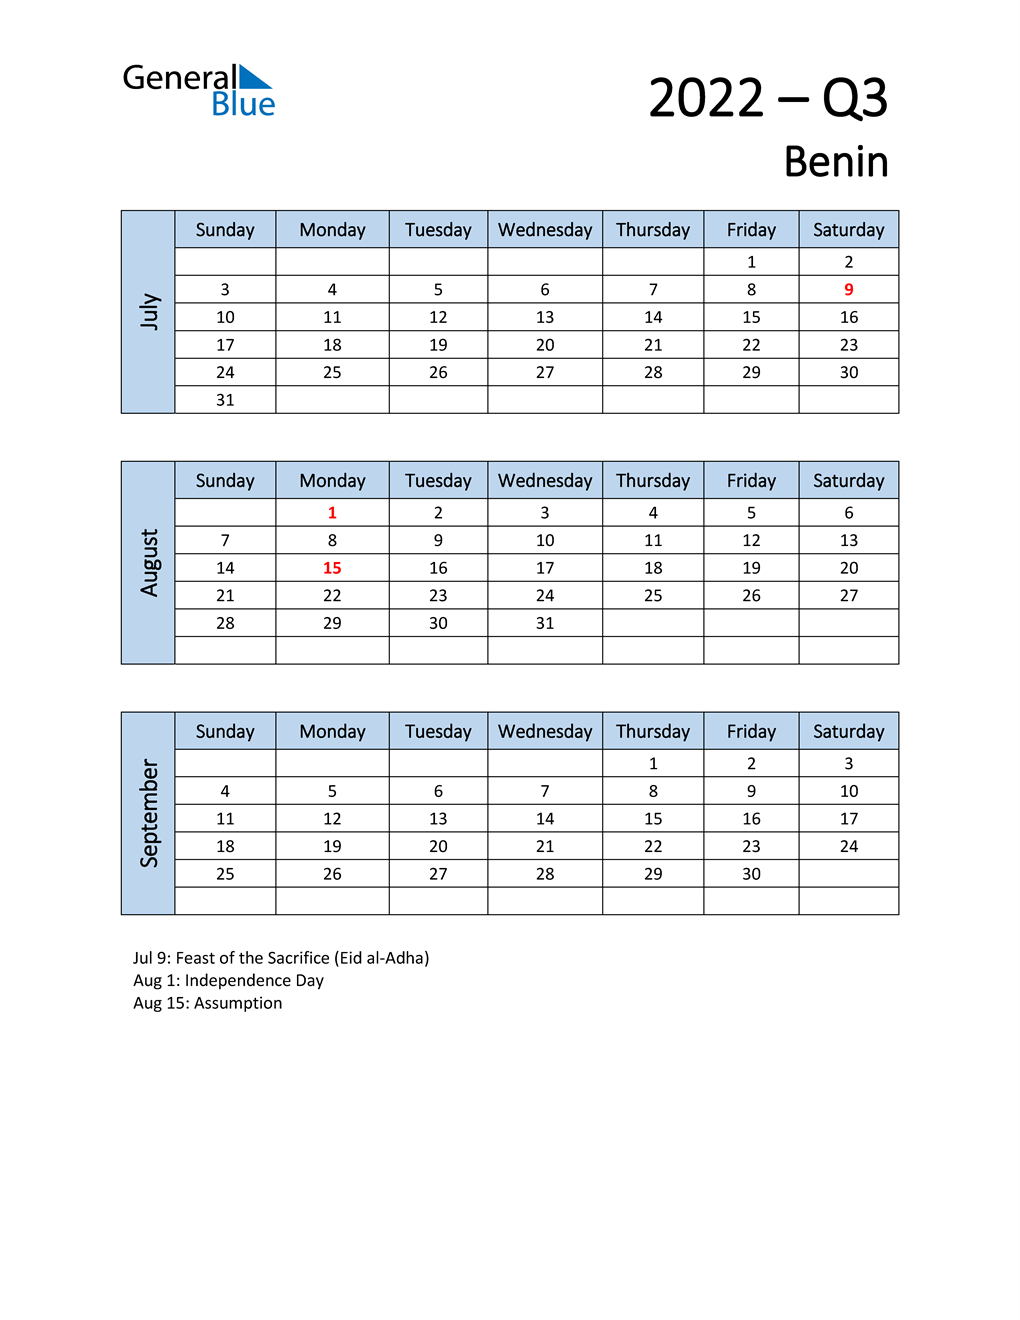  Free Q3 2022 Calendar for Benin